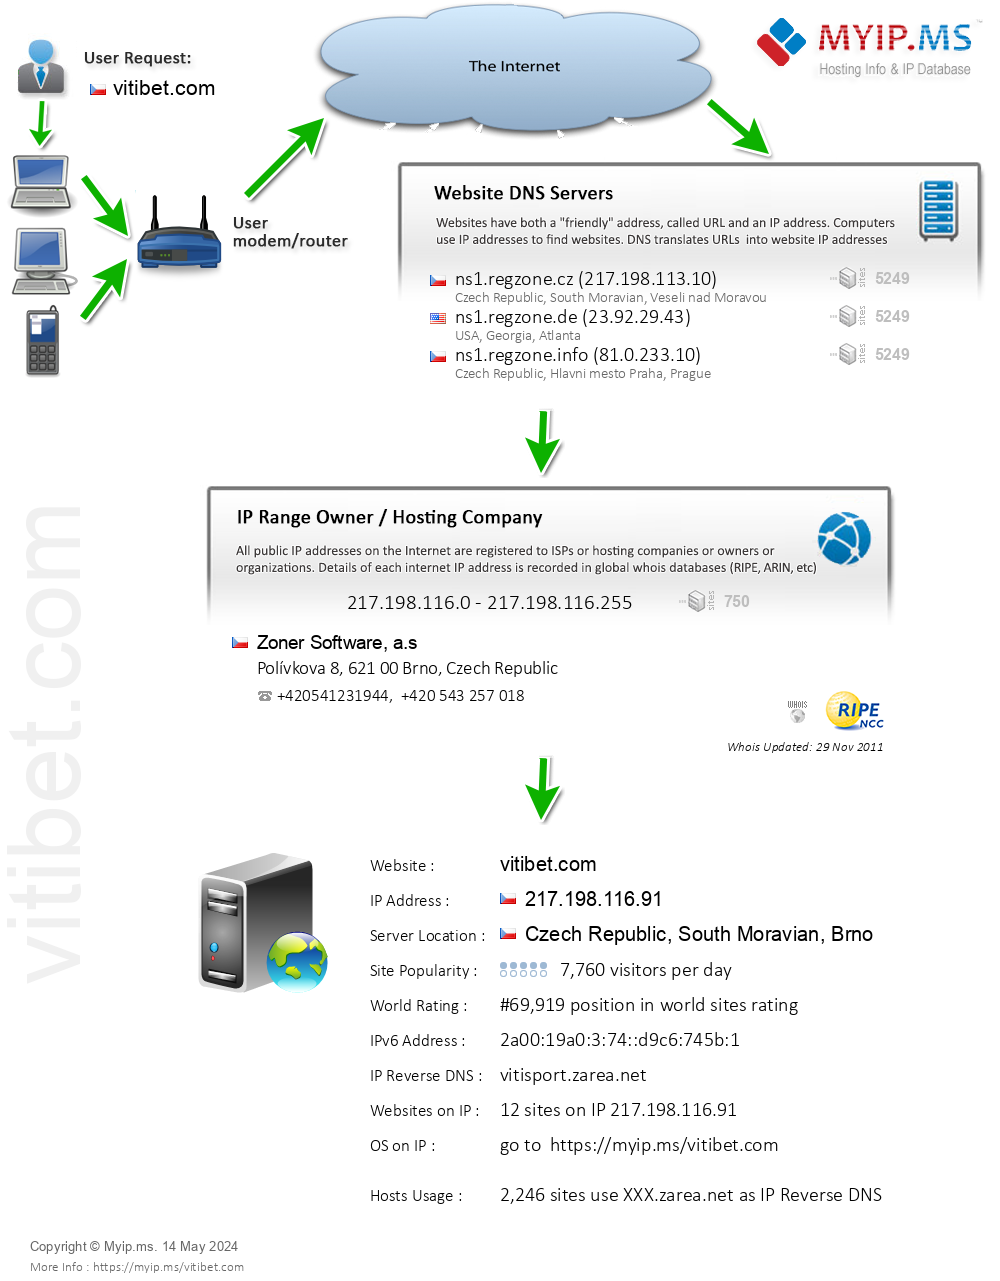 Vitibet.com - Website Hosting Visual IP Diagram